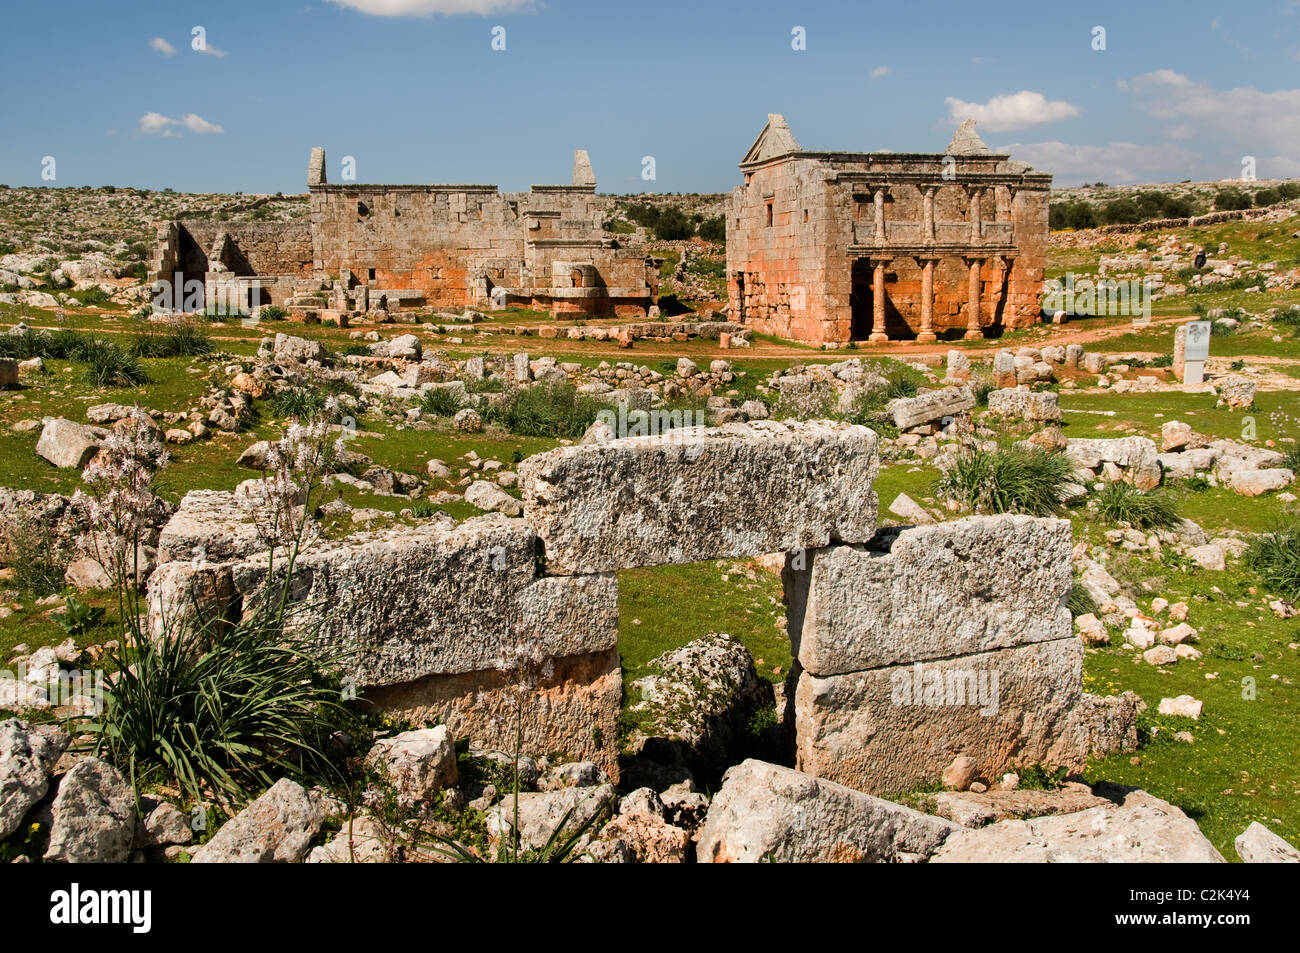 Serjilla, Siria, Dead City, contiene, 700 sitios, Jebel Riha, cerca de Hama y Alepo, 473 d.C., romano, bizantino, Hayat Tahrir al-Sham, Siglo 5th, Foto de stock